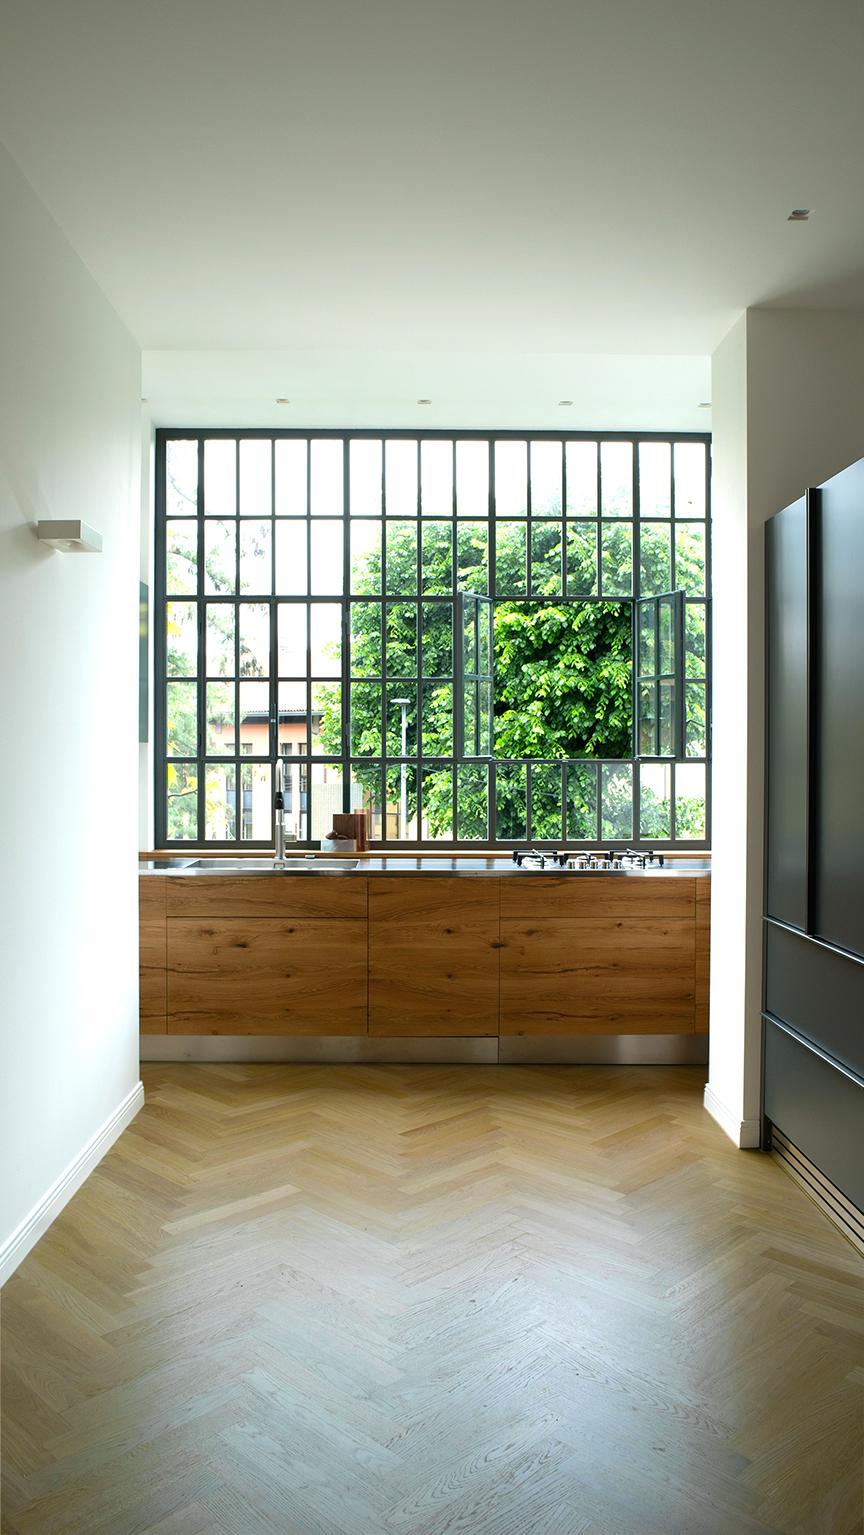 Steel worktop with built-in sink. Kitchen doors and inserts in oak beams.
Extra-matt lacquered cupboard doors.